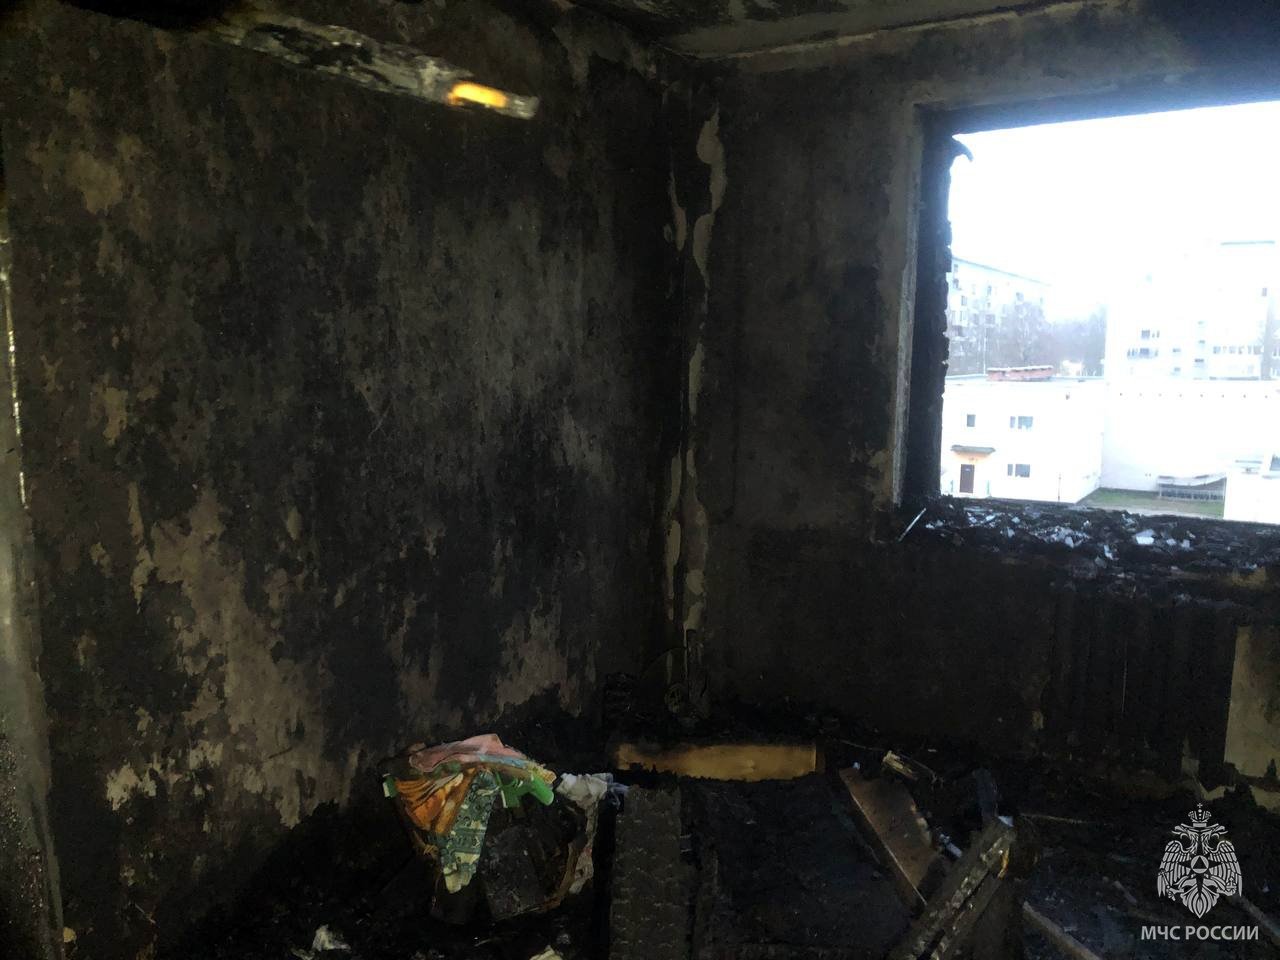 Двух женщин спасли из горящего дома в Череповце